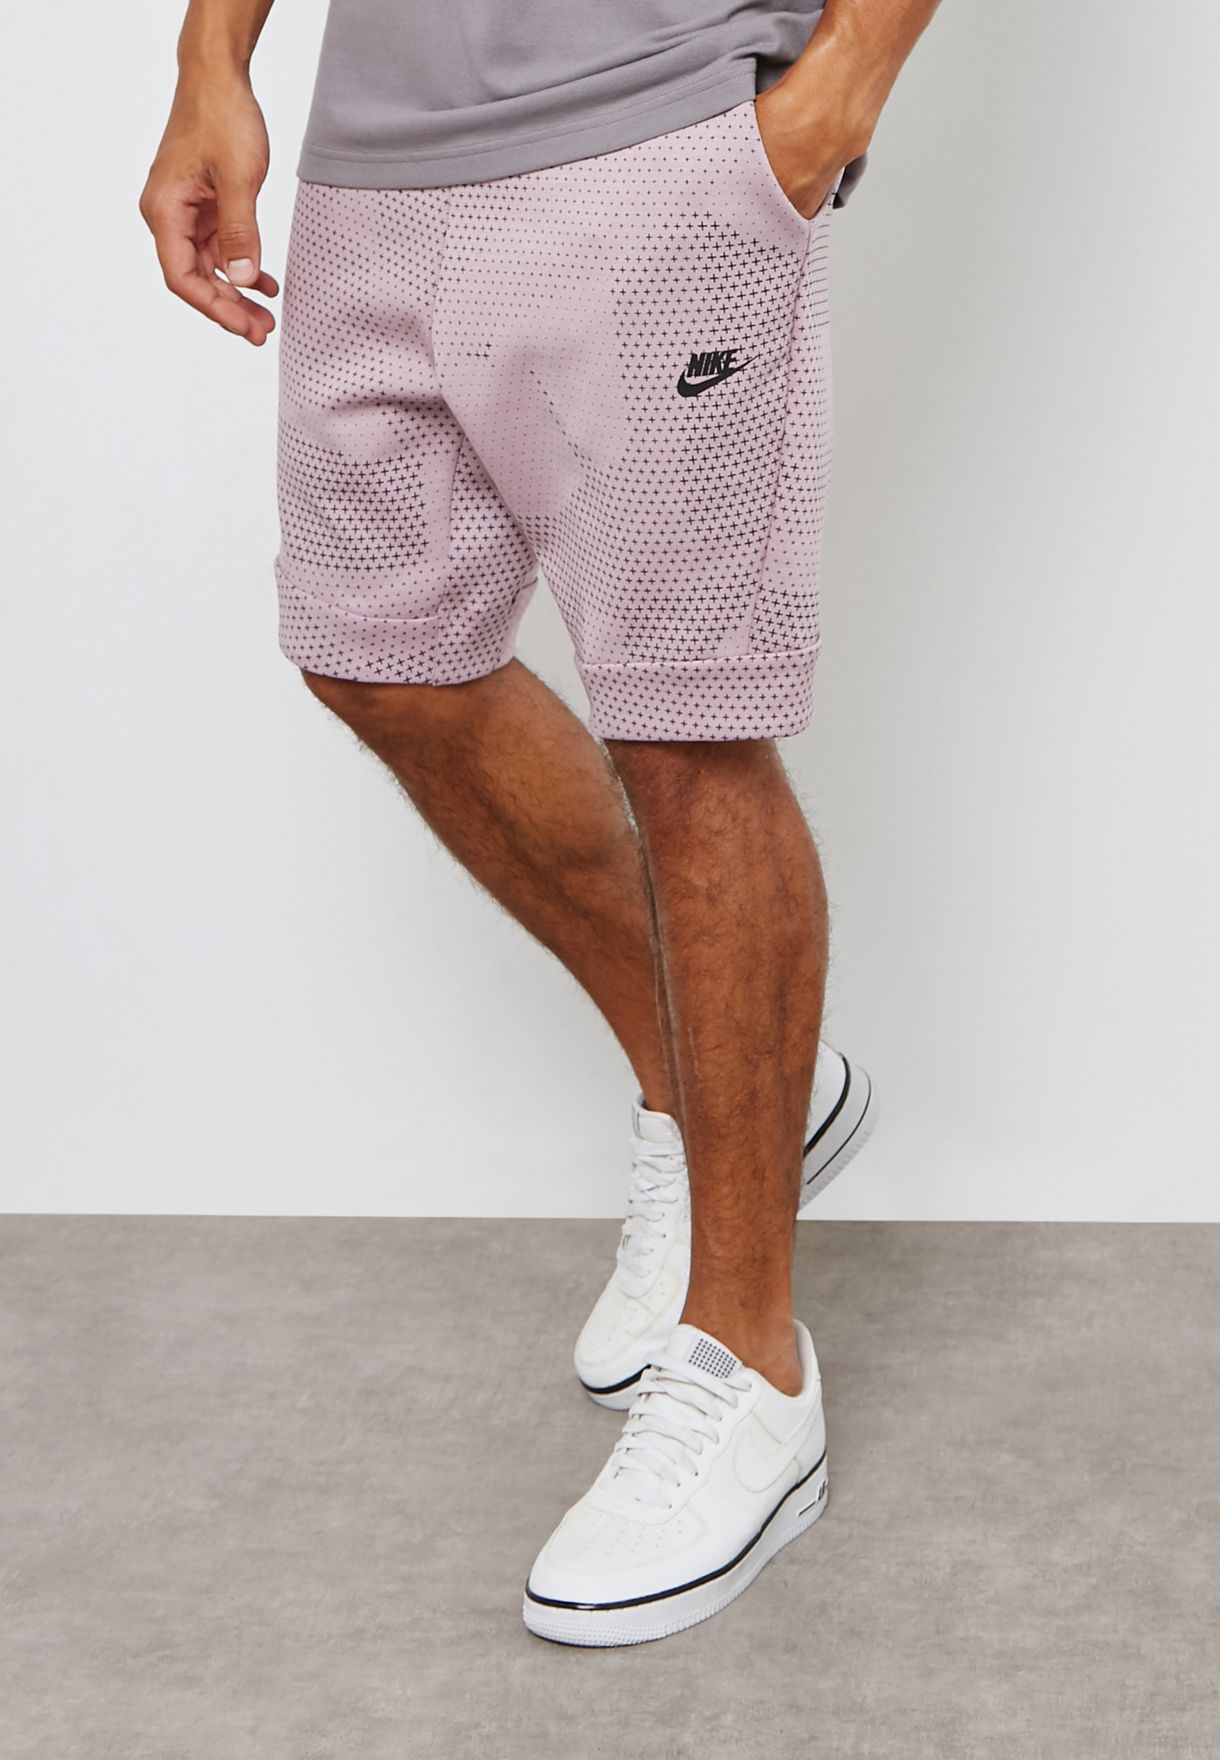 purple nike fleece shorts